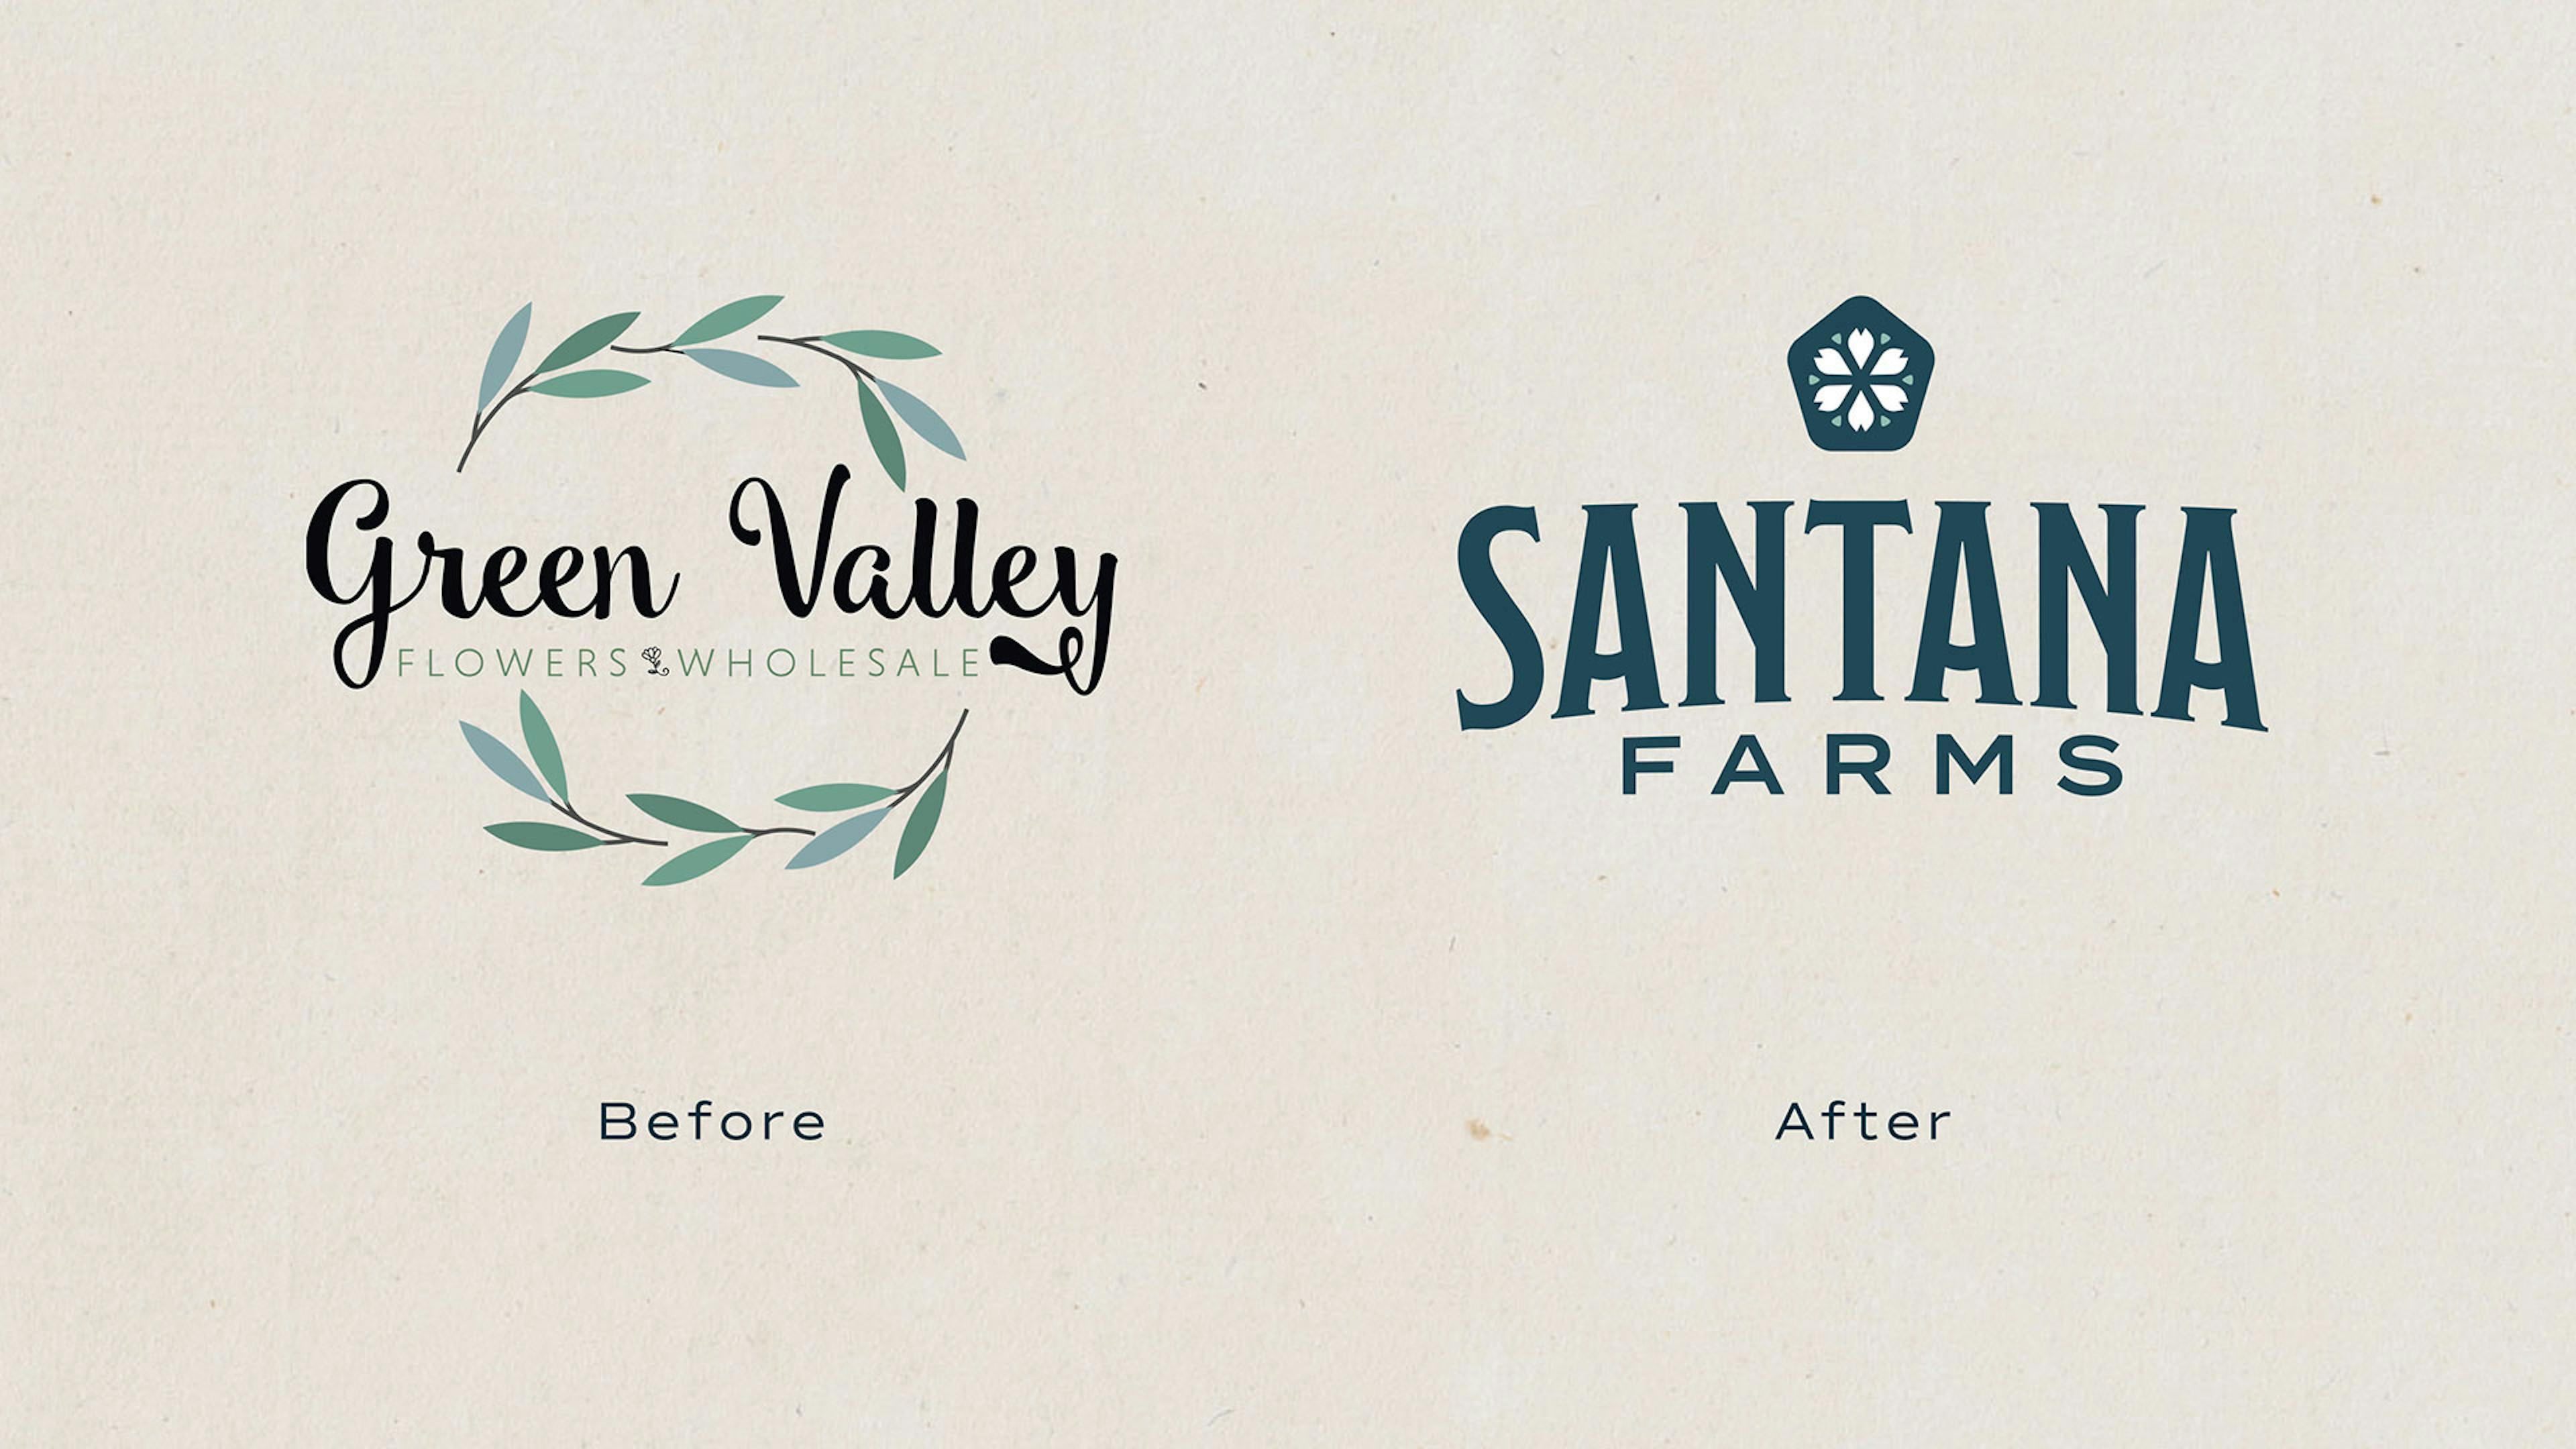 Santana Farms rebrand